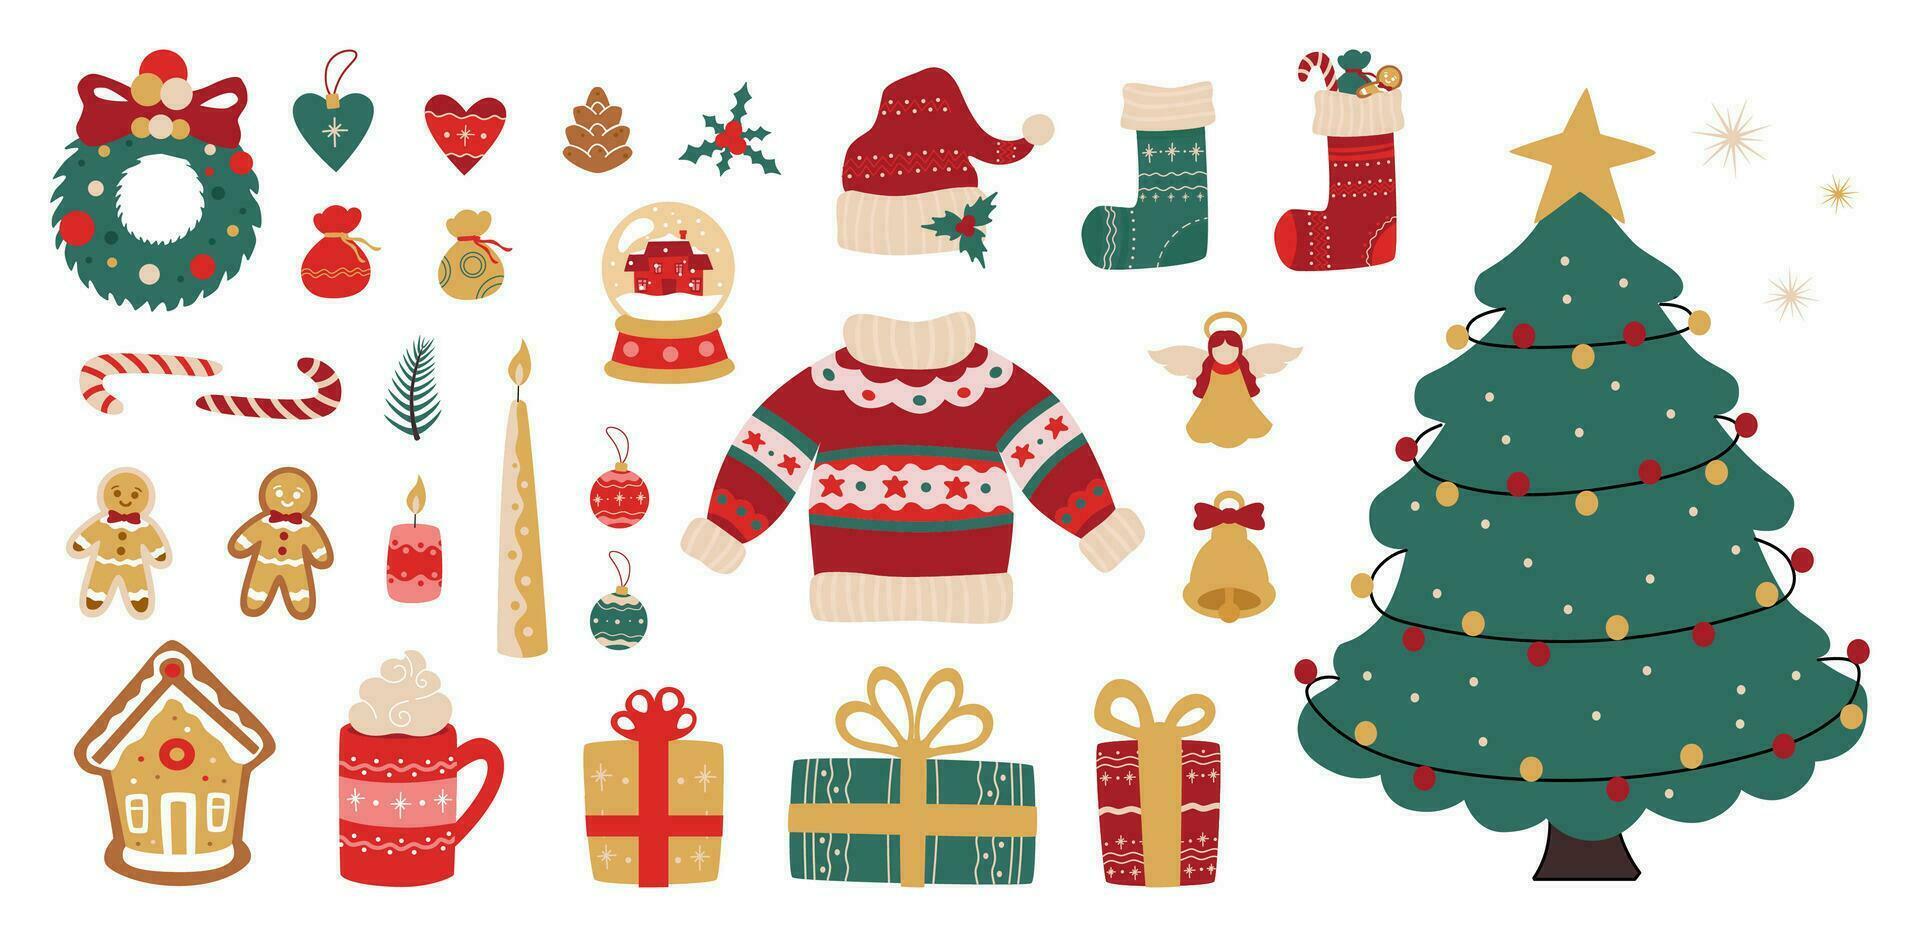 alegre Natal Projeto elementos, adesivo pacote com tradicional Natal feriado sinais e símbolos, abeto árvore, presentes, meias, Pão de gengibre doces, caloroso roupas e outro. vetor decorativo ilustração.